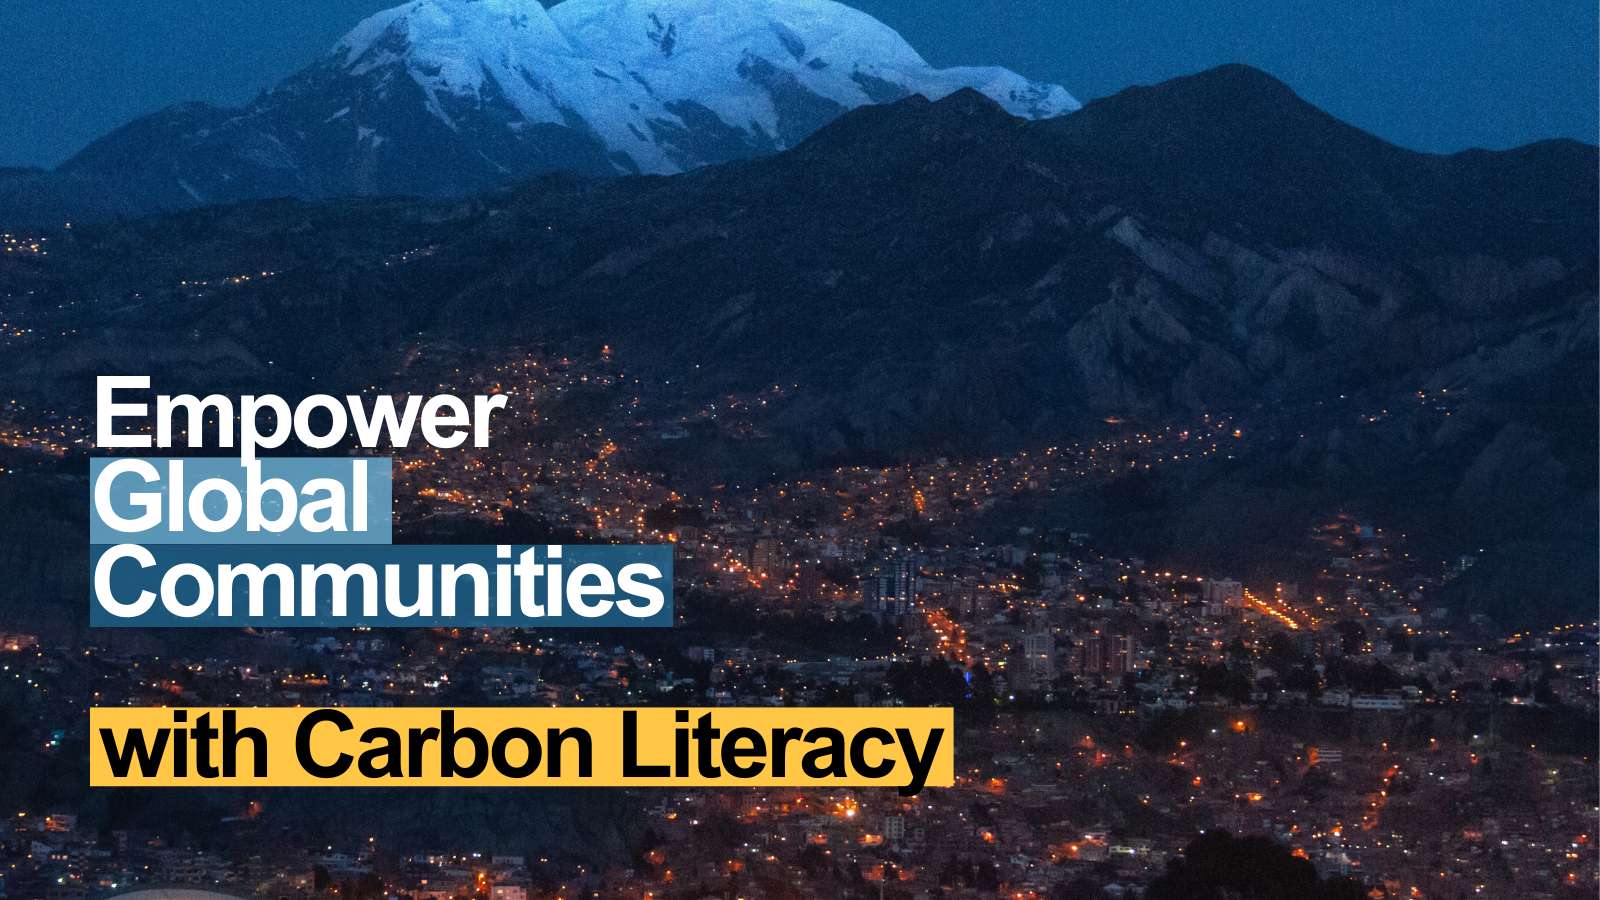 Ajutați-ne să dăm putere comunităților globale - Proiectul Carbon Literacy